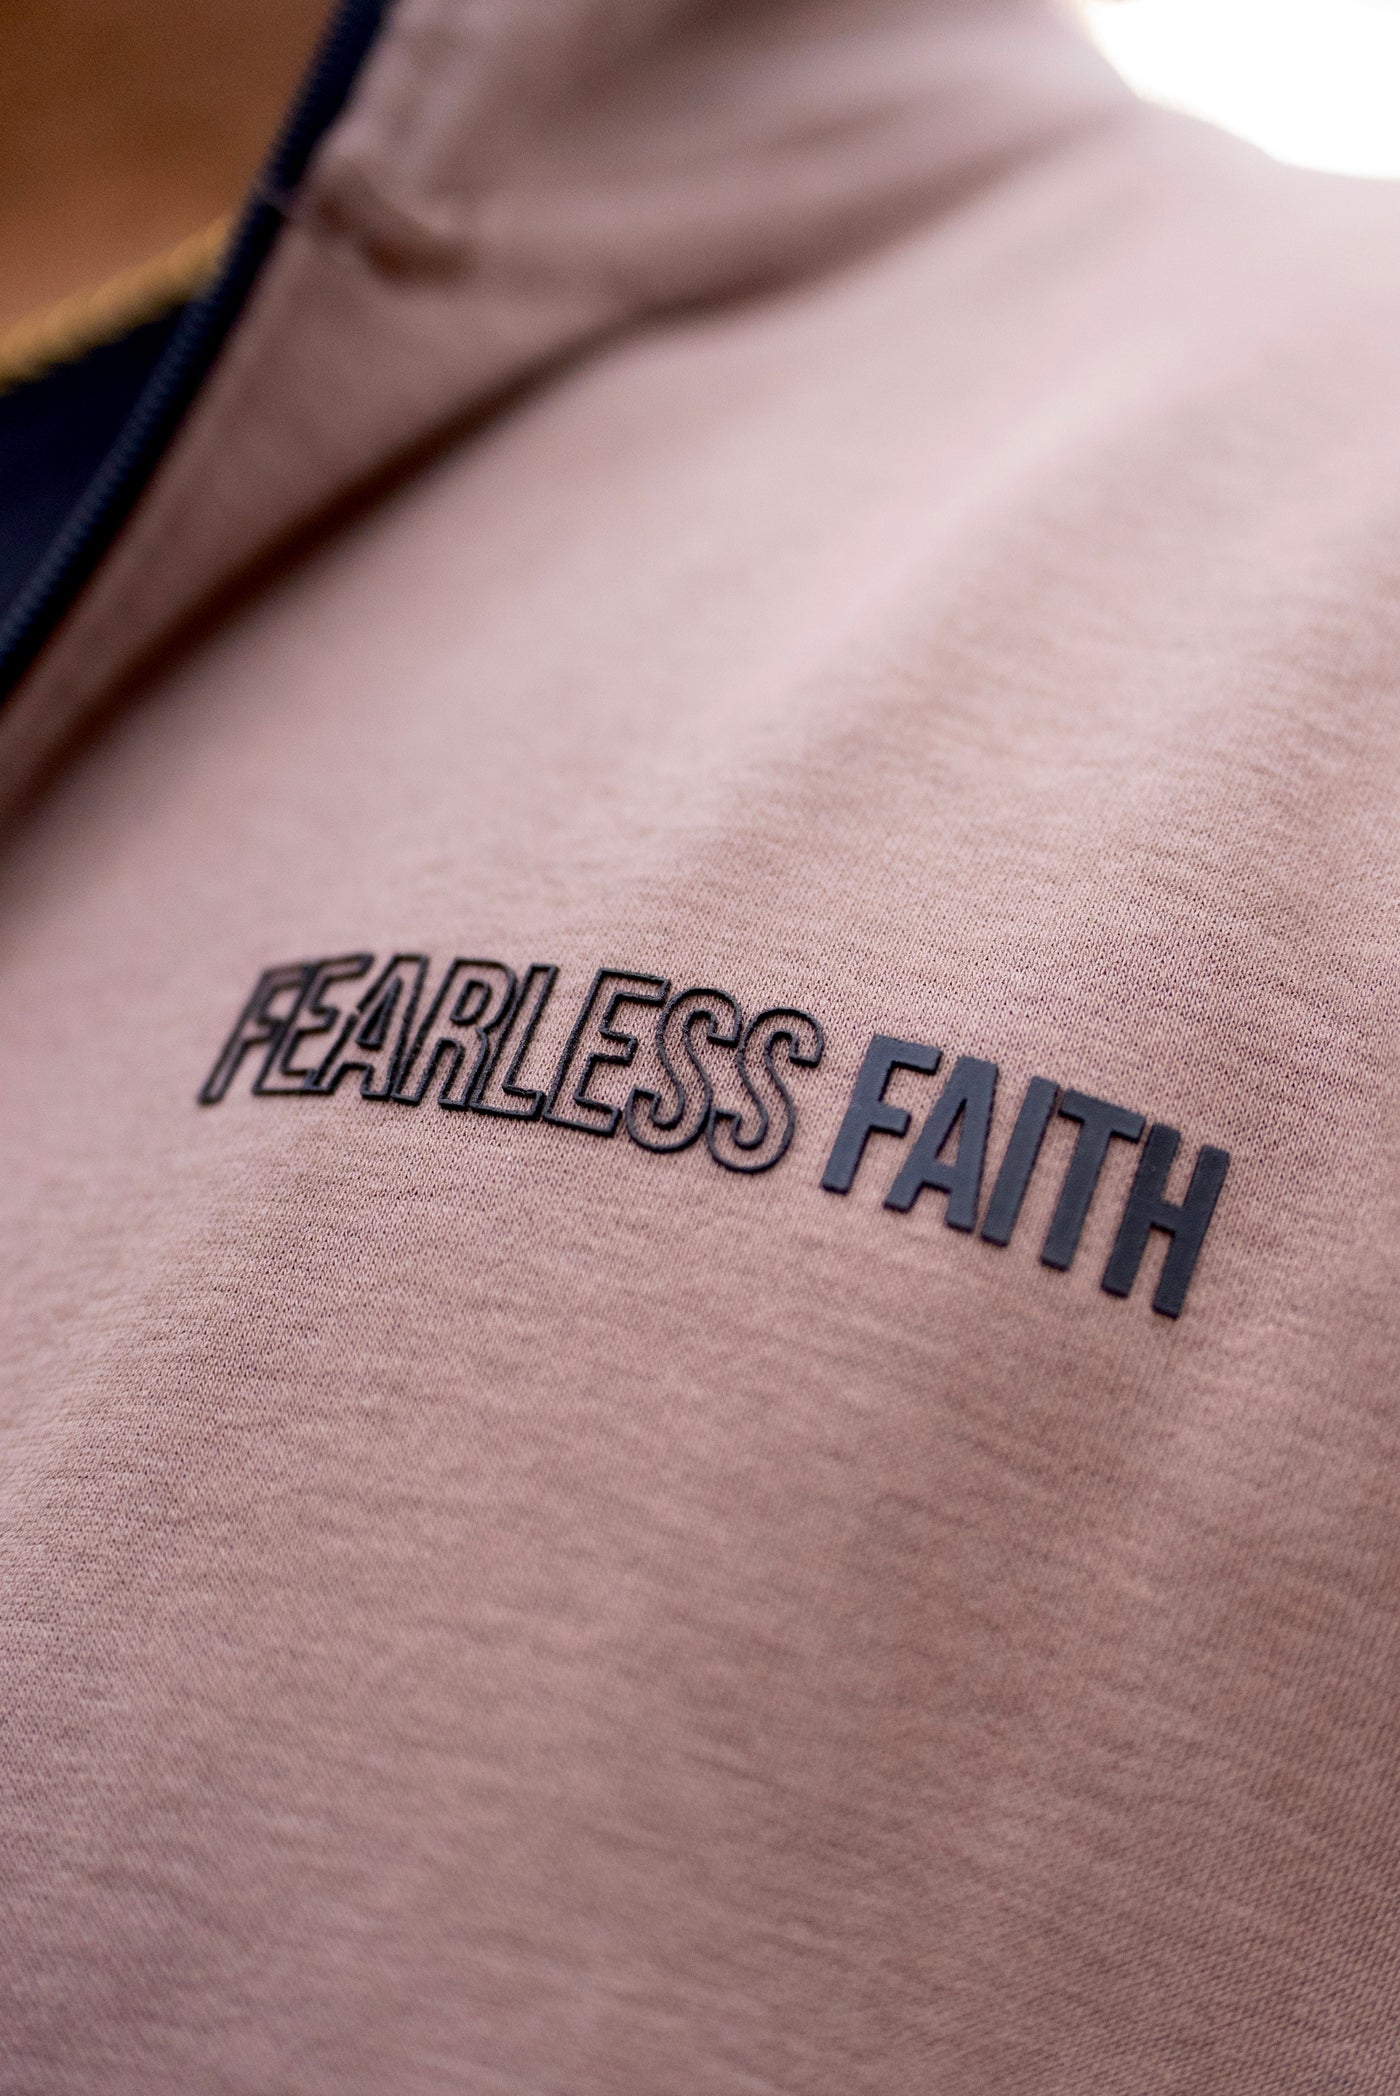 Fearless Faith Tracksuit Jacket - Mocha